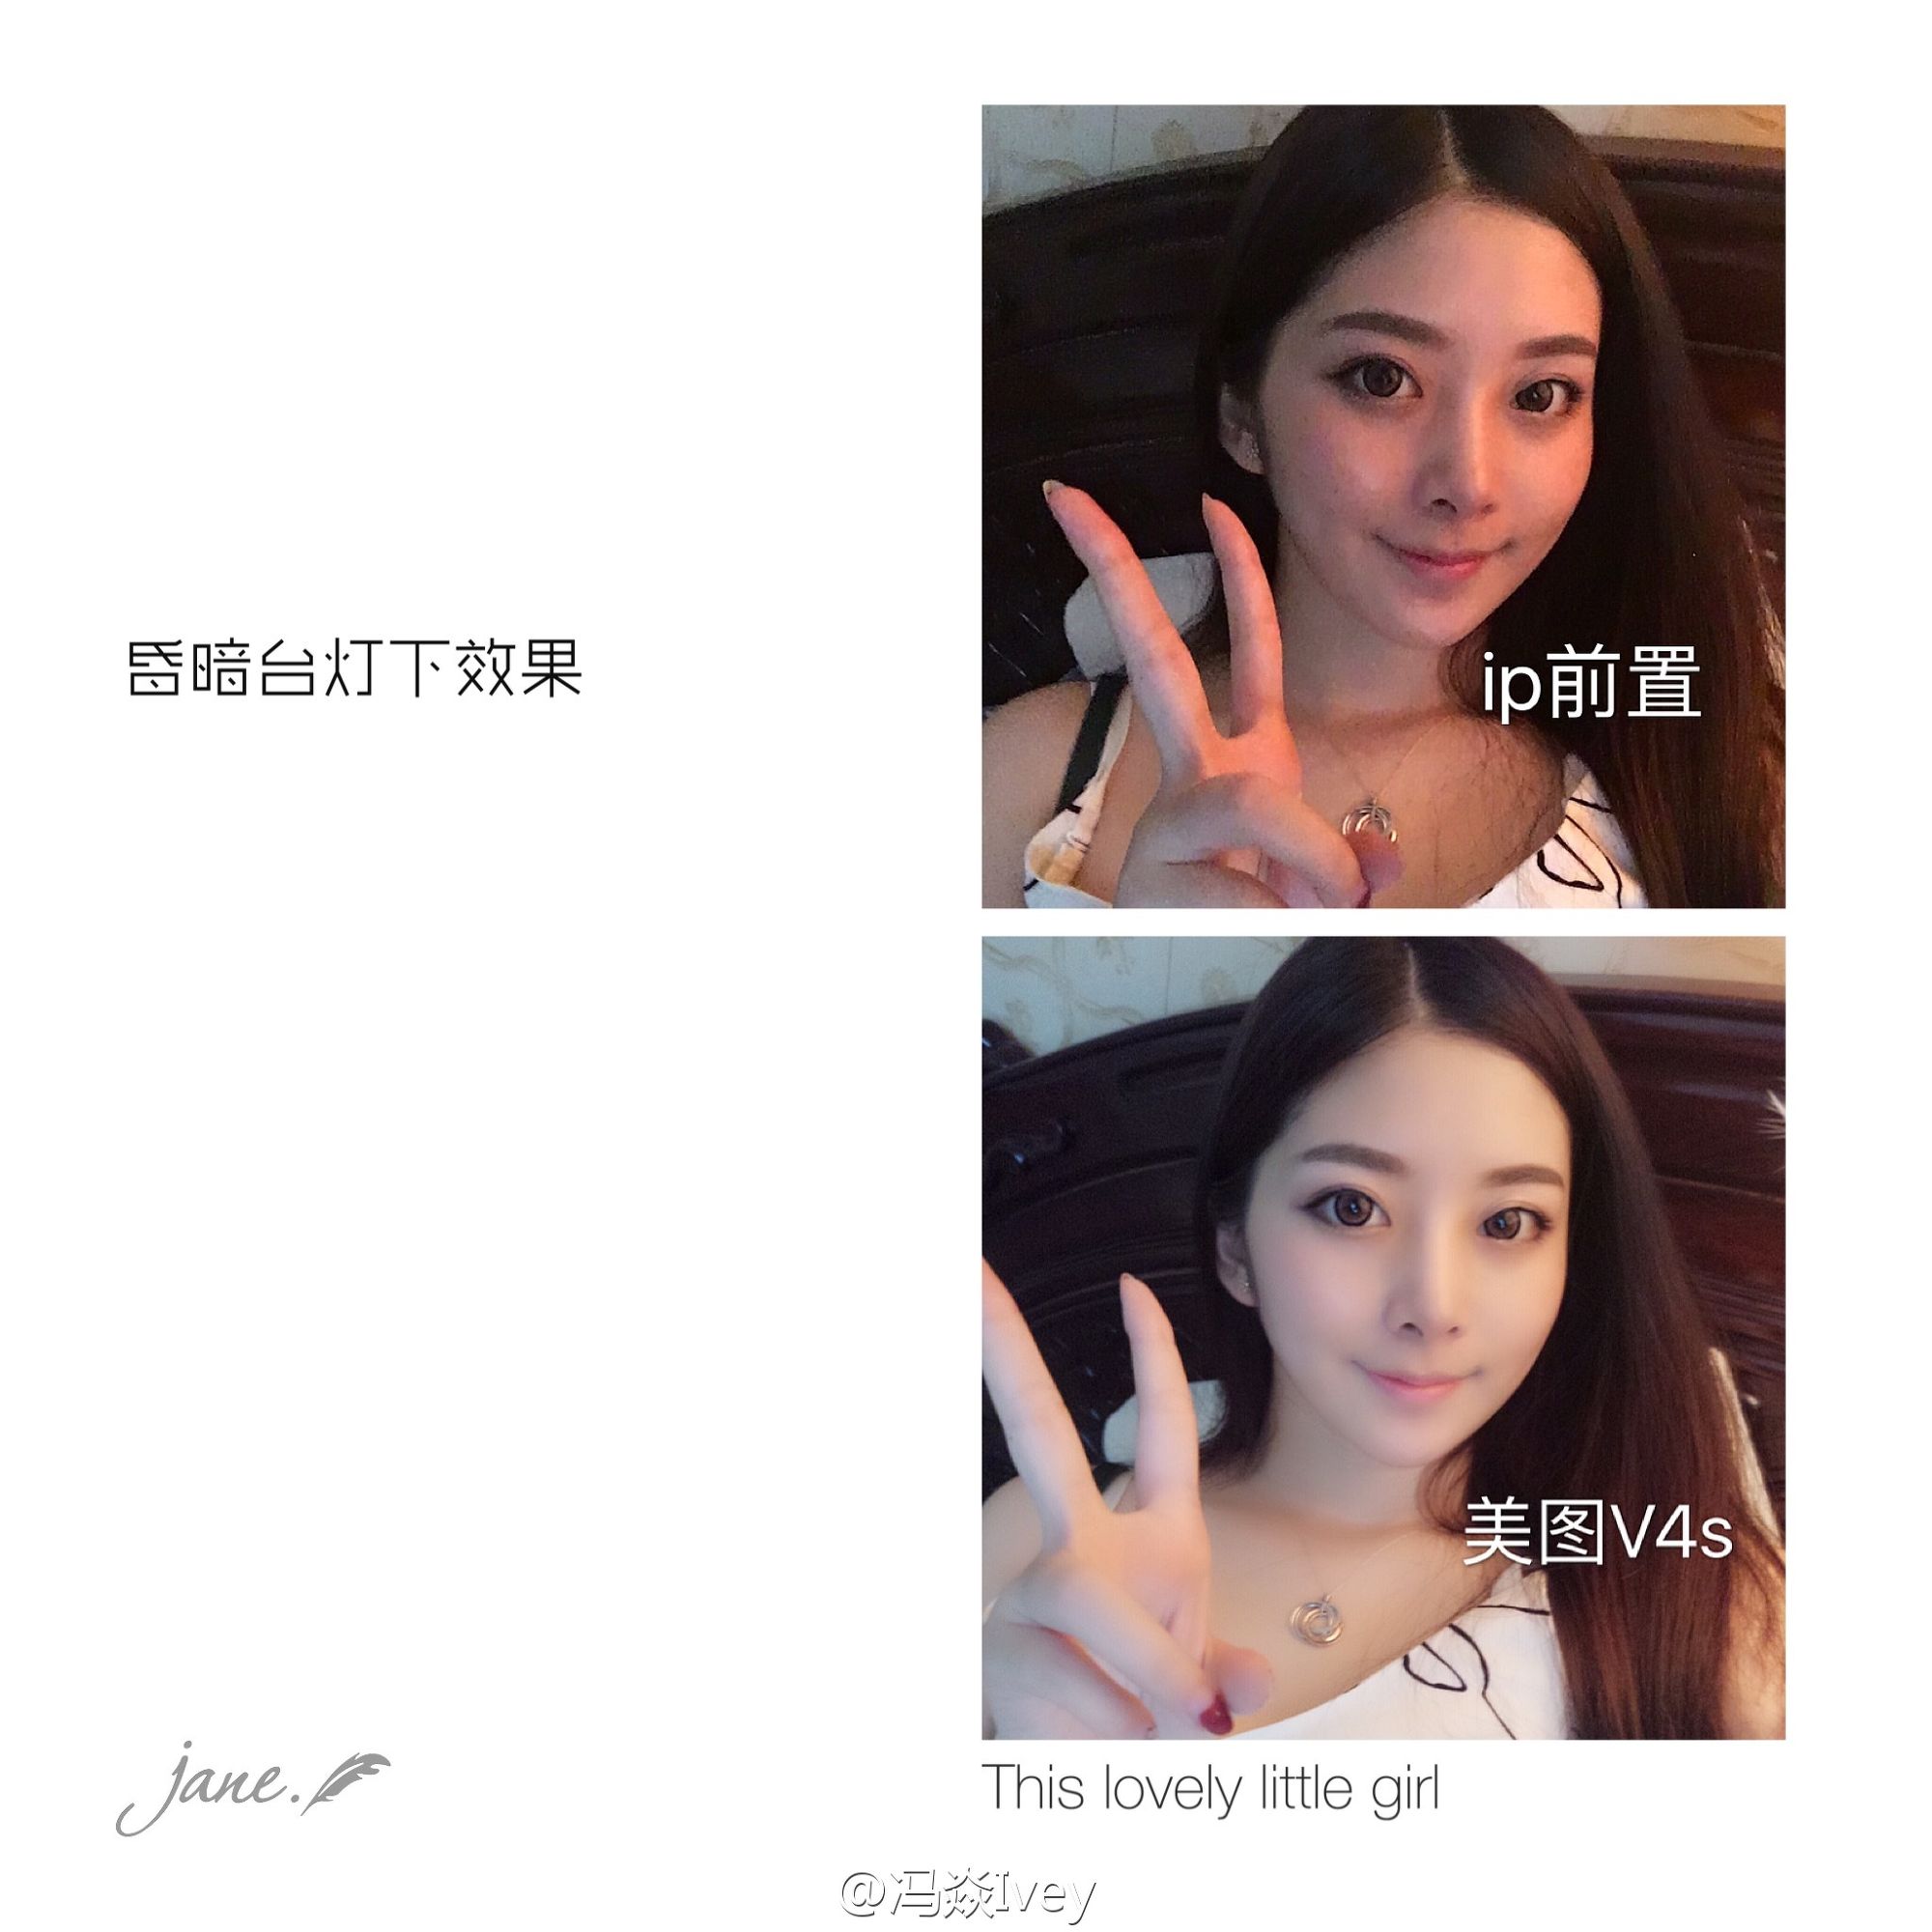 网络红人冯焱亲自测试美图照片V4s清雅版自拍照 iPhone6s被秒成渣！